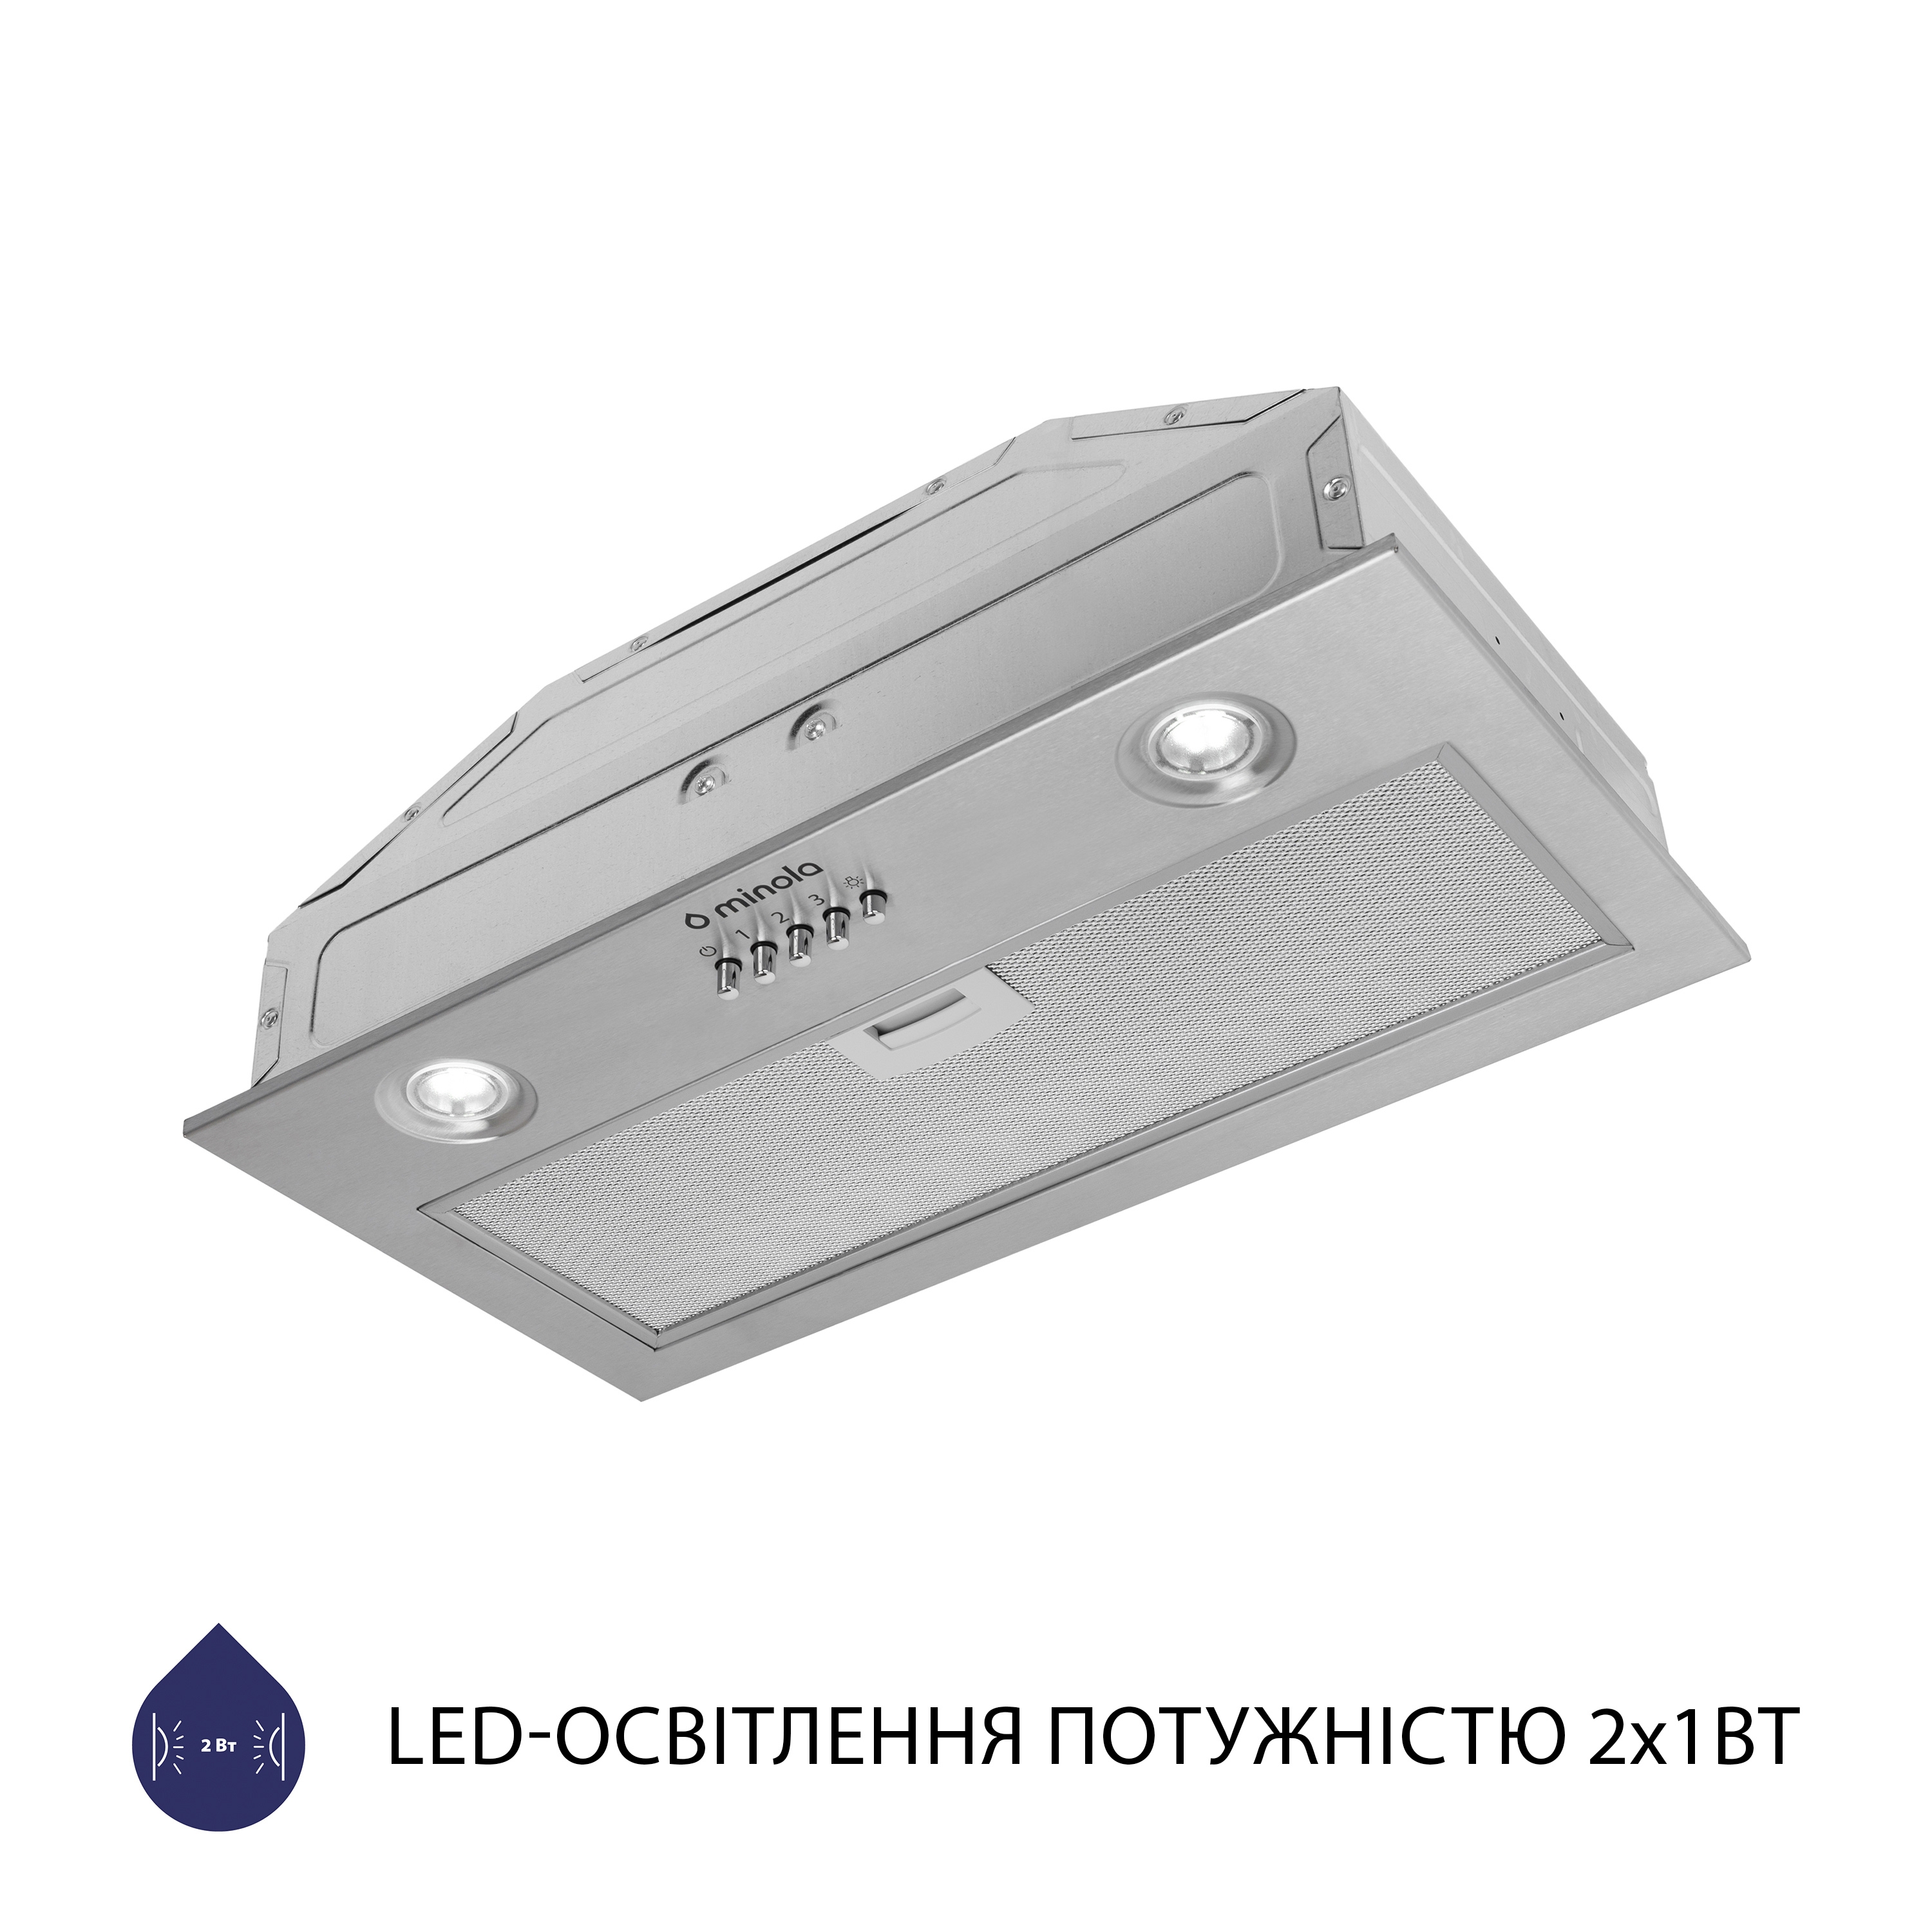 Витяжка кухонная полновстраиваемая Minola HBI 5204 I 700 LED отзывы - изображения 5